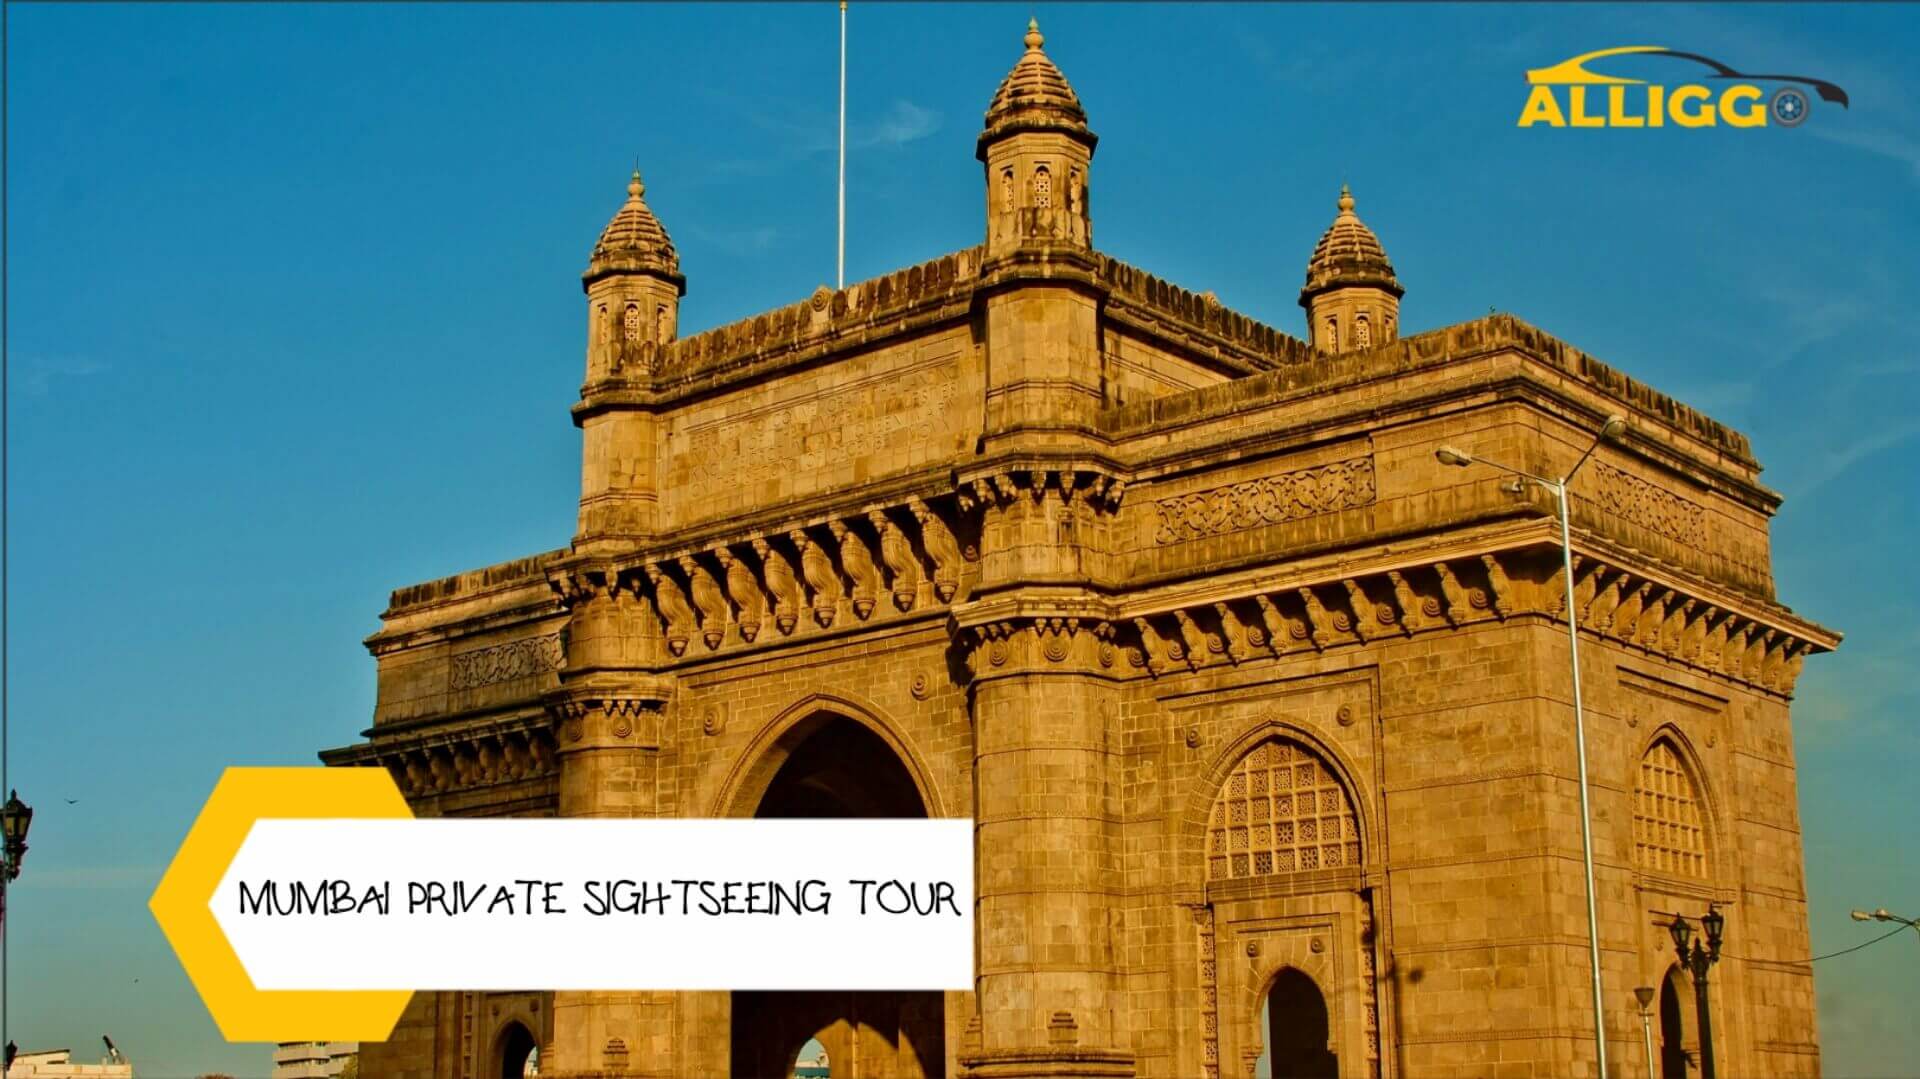 Alliggo_Car_Rentals_Mumbai_Private_Sightseeing_Tour